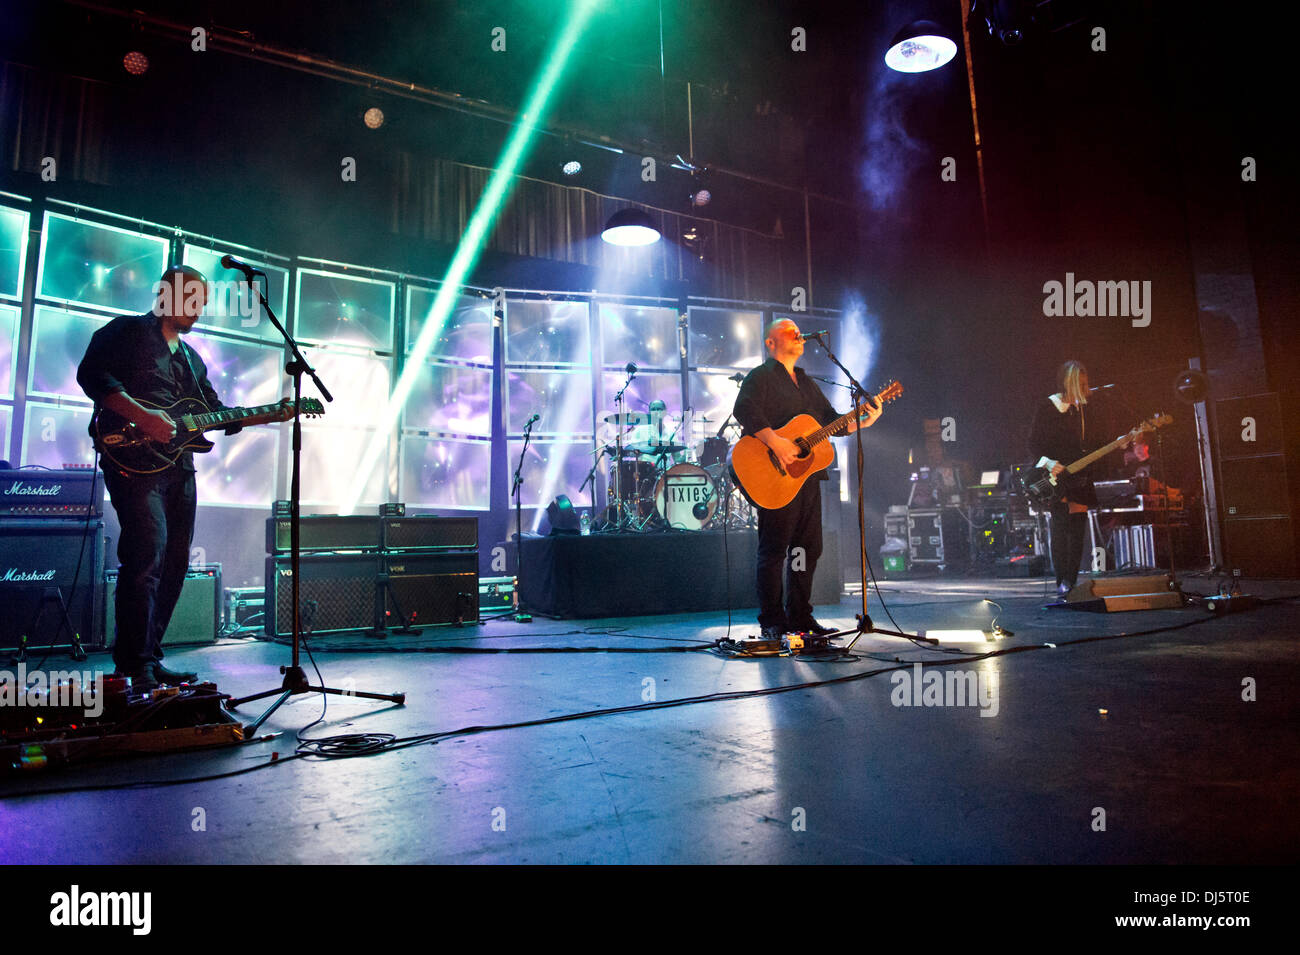 Manchester, Großbritannien. 21. November 2013. Uns Rock Band Pixies in Konzert in der O2 Apollo, Manchester, UK. Joey Santiago (links) und Black Francis (Mitte). Quelle: John Bentley/Alamy leben Nachrichten Stockfoto